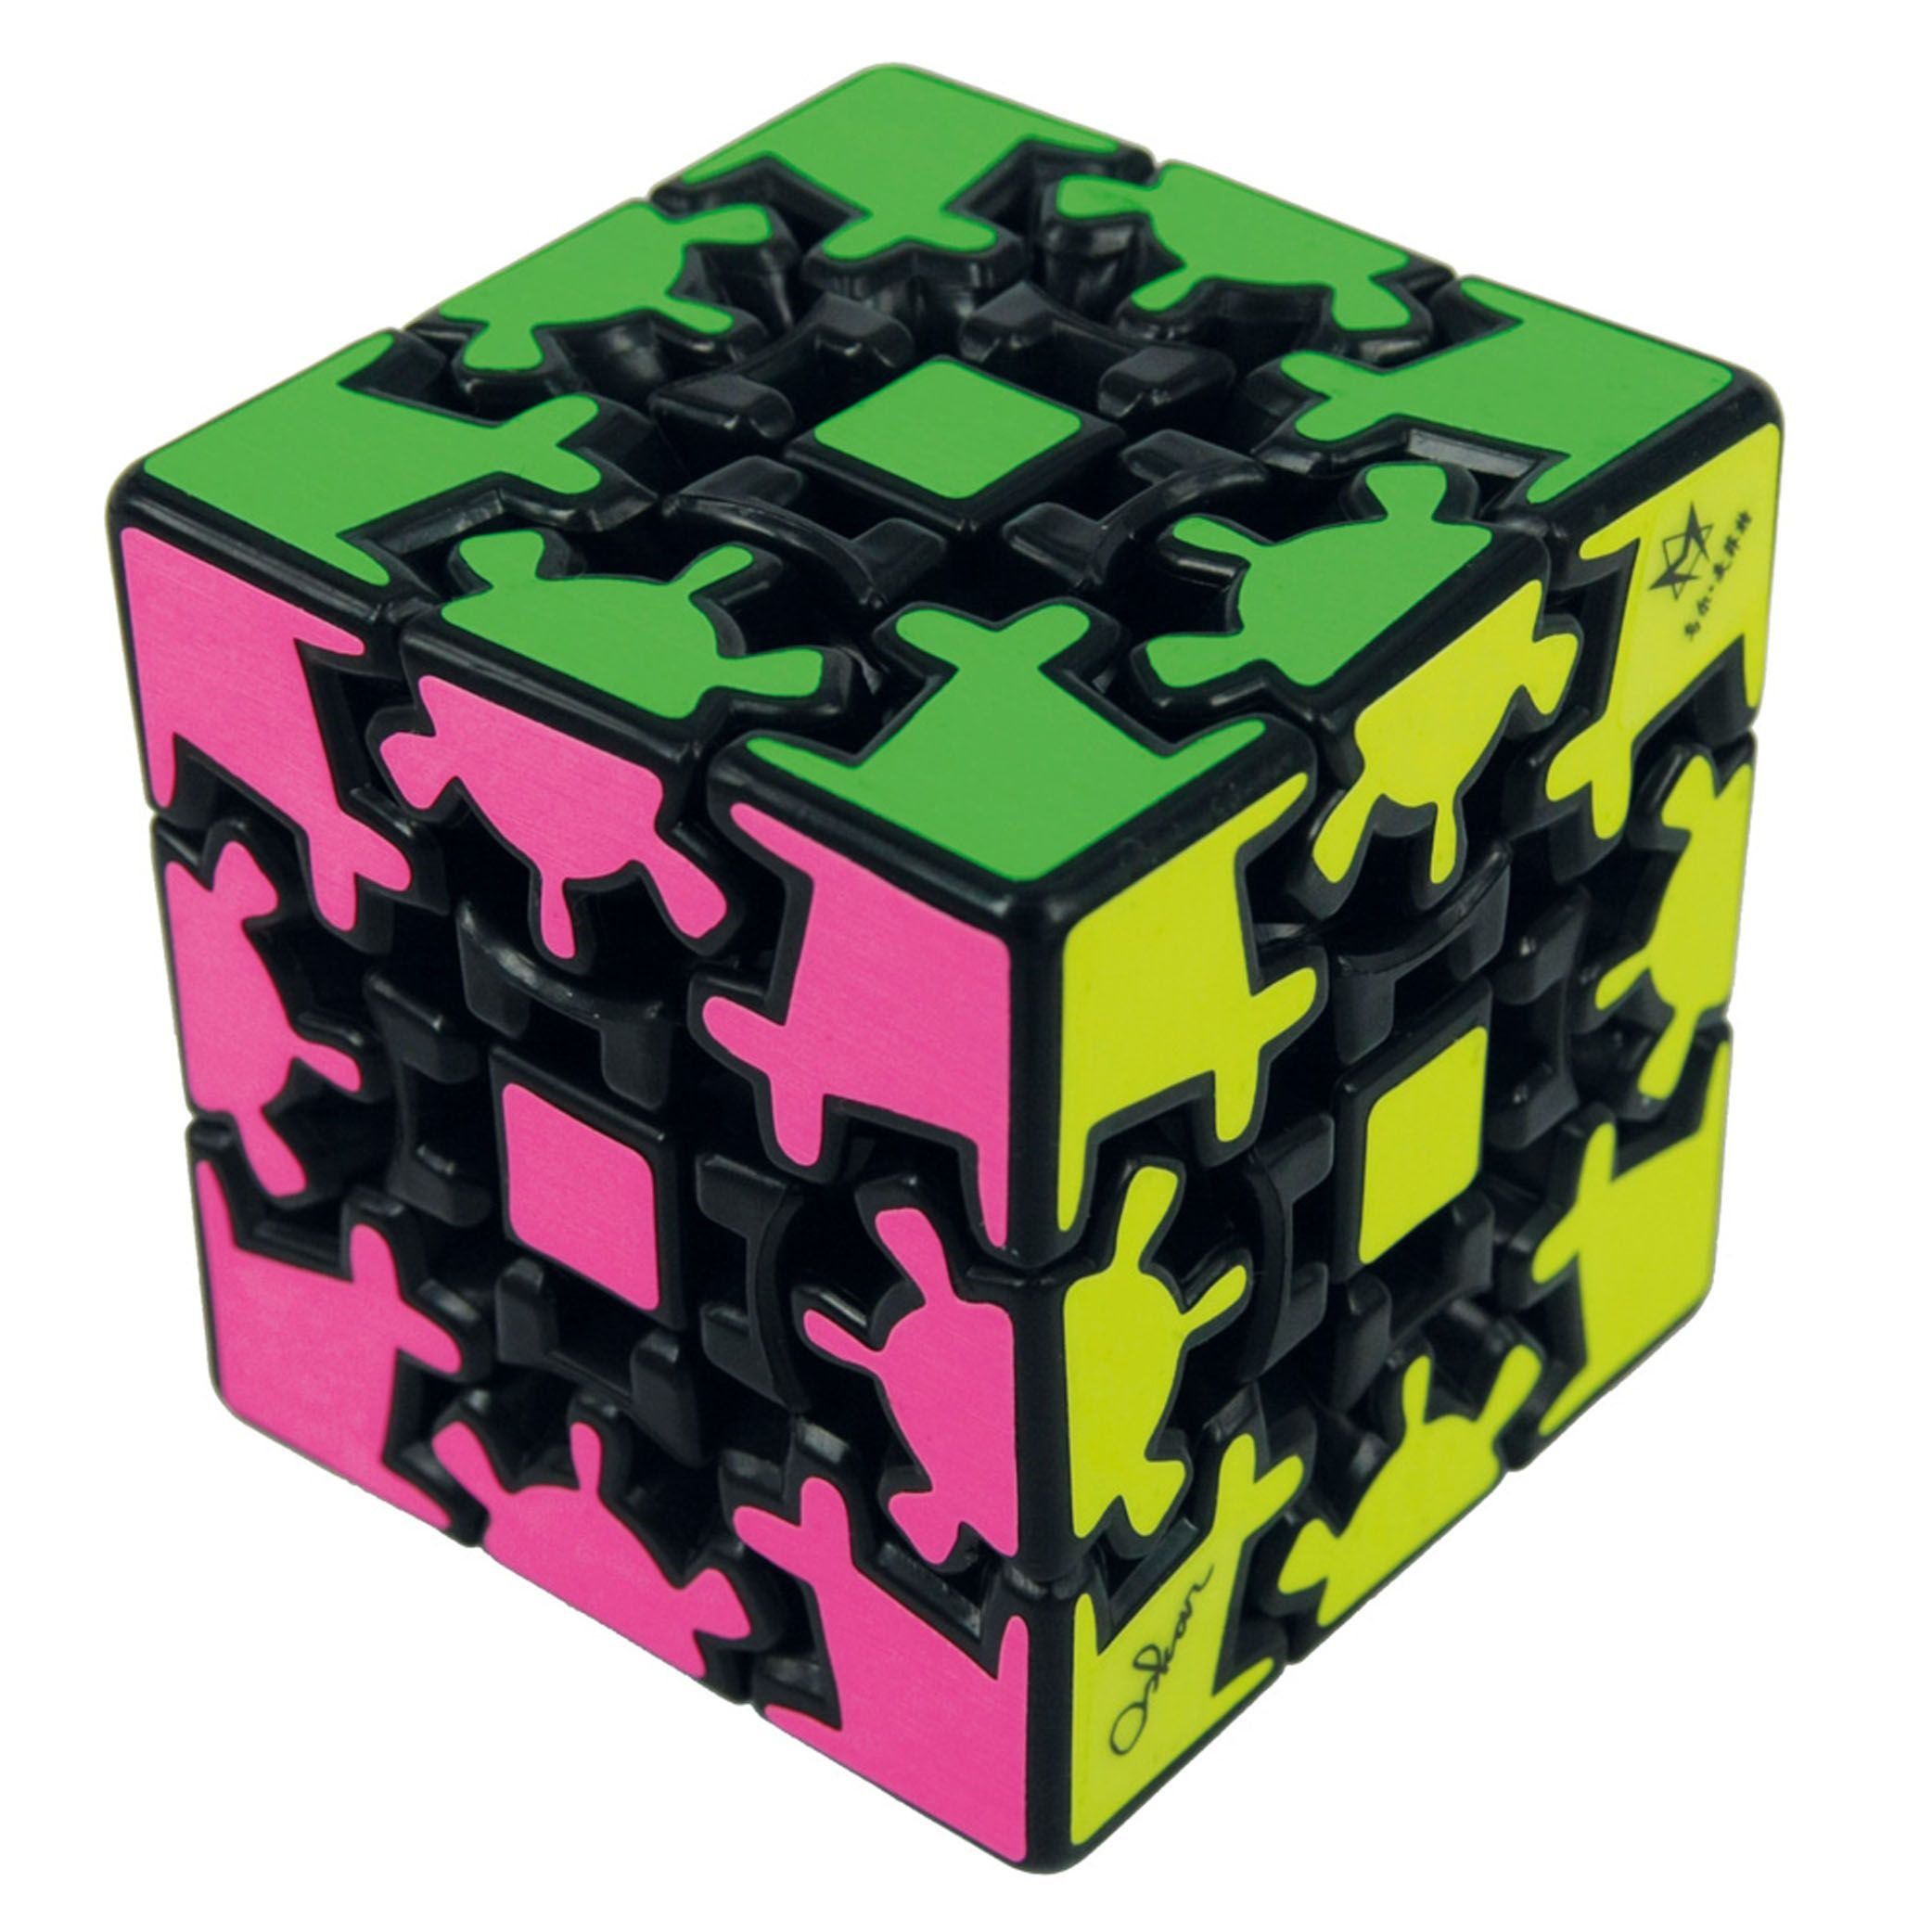 Cube купить спб. Шестеренчатый кубик Рубика 3х3. Головоломка Meffert's Gear Cube. Шестеренчатый кубик Рубика Cube Puzzle. Головоломка Meffert's Gear Cube XXL.